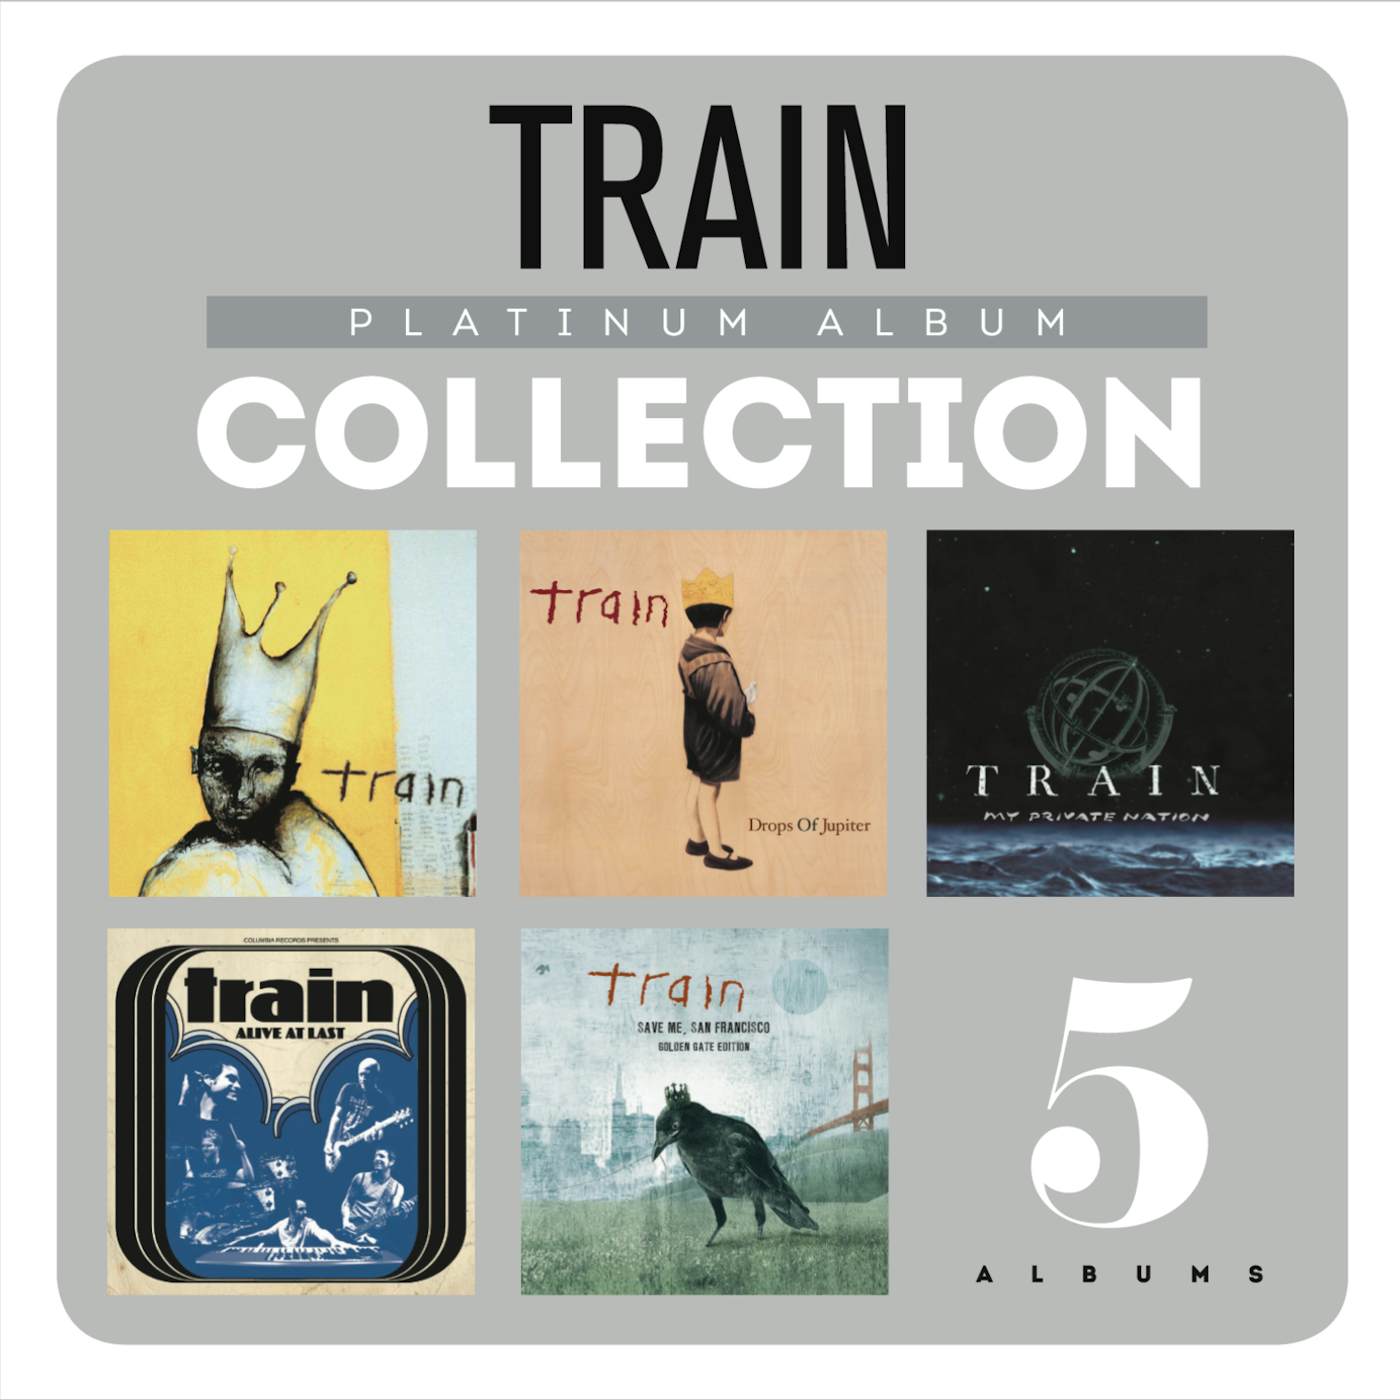 Train PLATINUM ALBUM COLLECTION CD